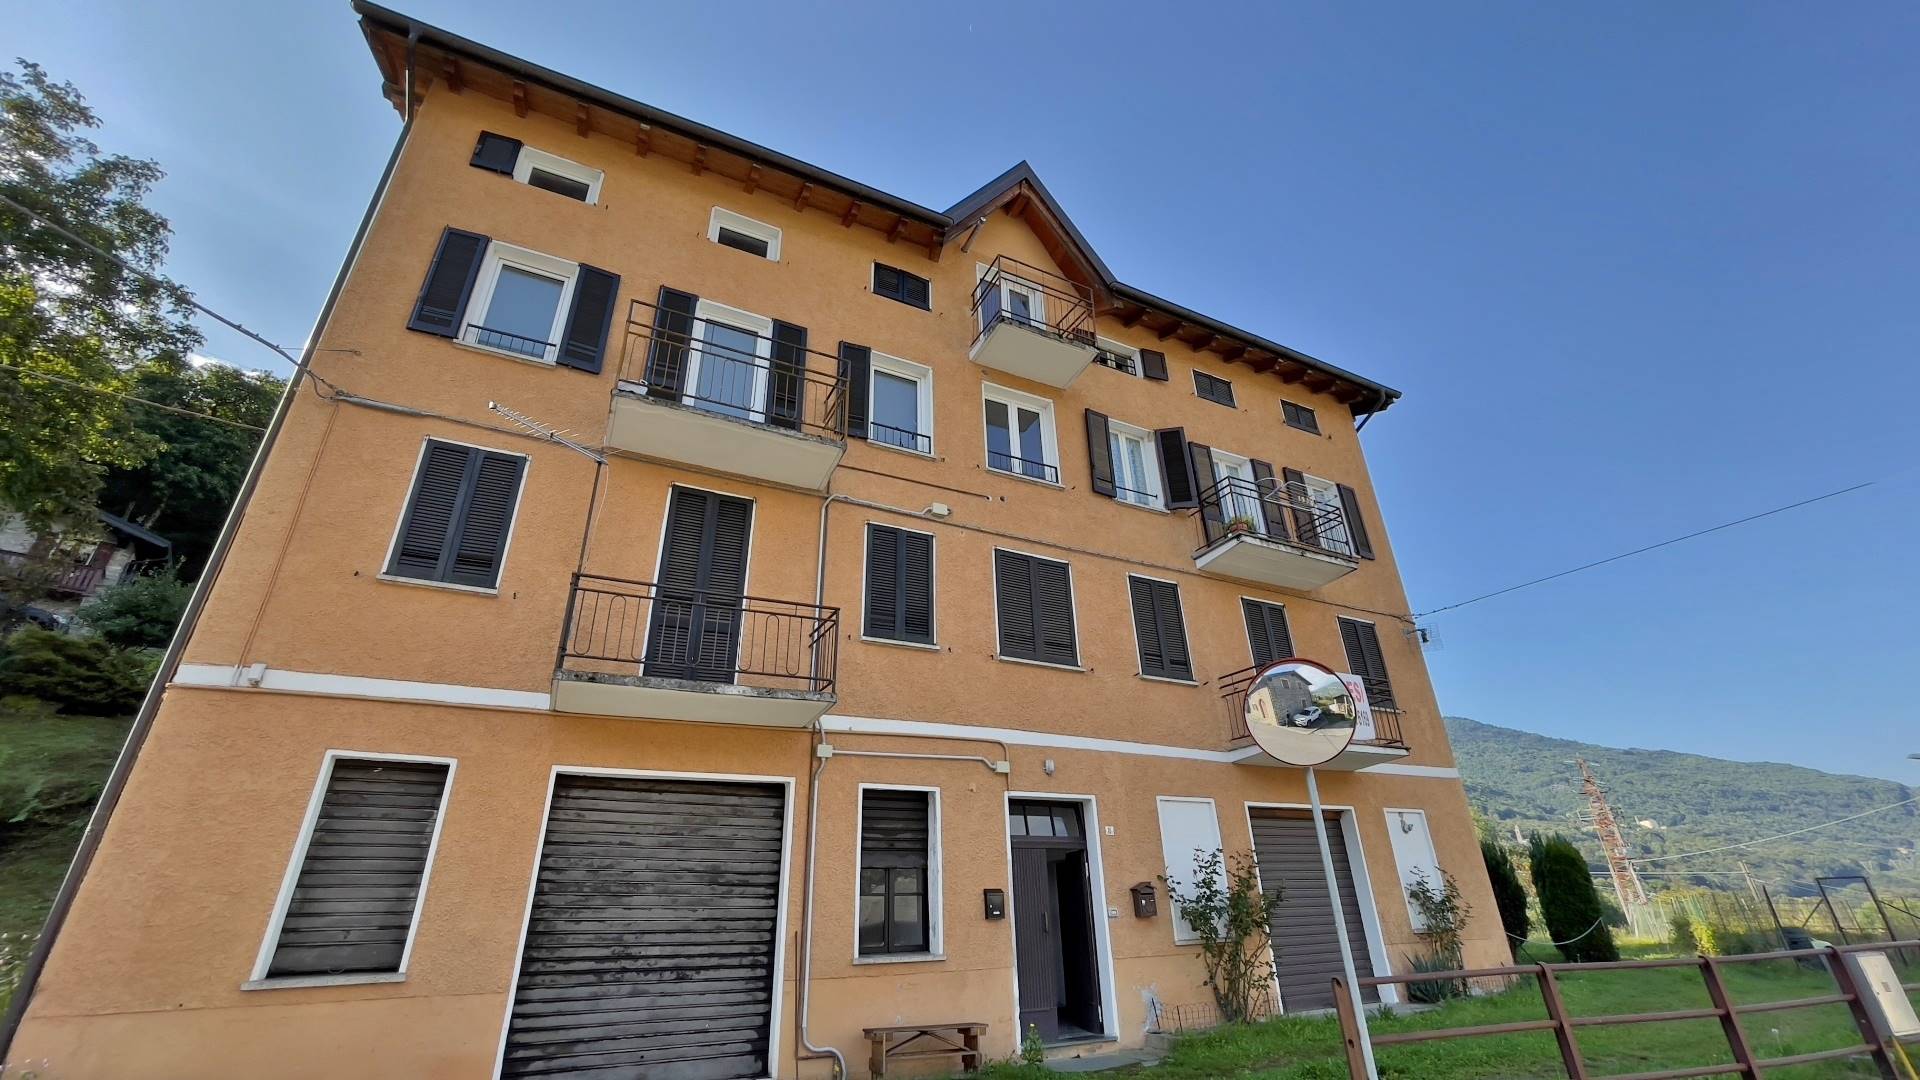 Appartamento in vendita a Teglio, 4 locali, prezzo € 45.000 | PortaleAgenzieImmobiliari.it